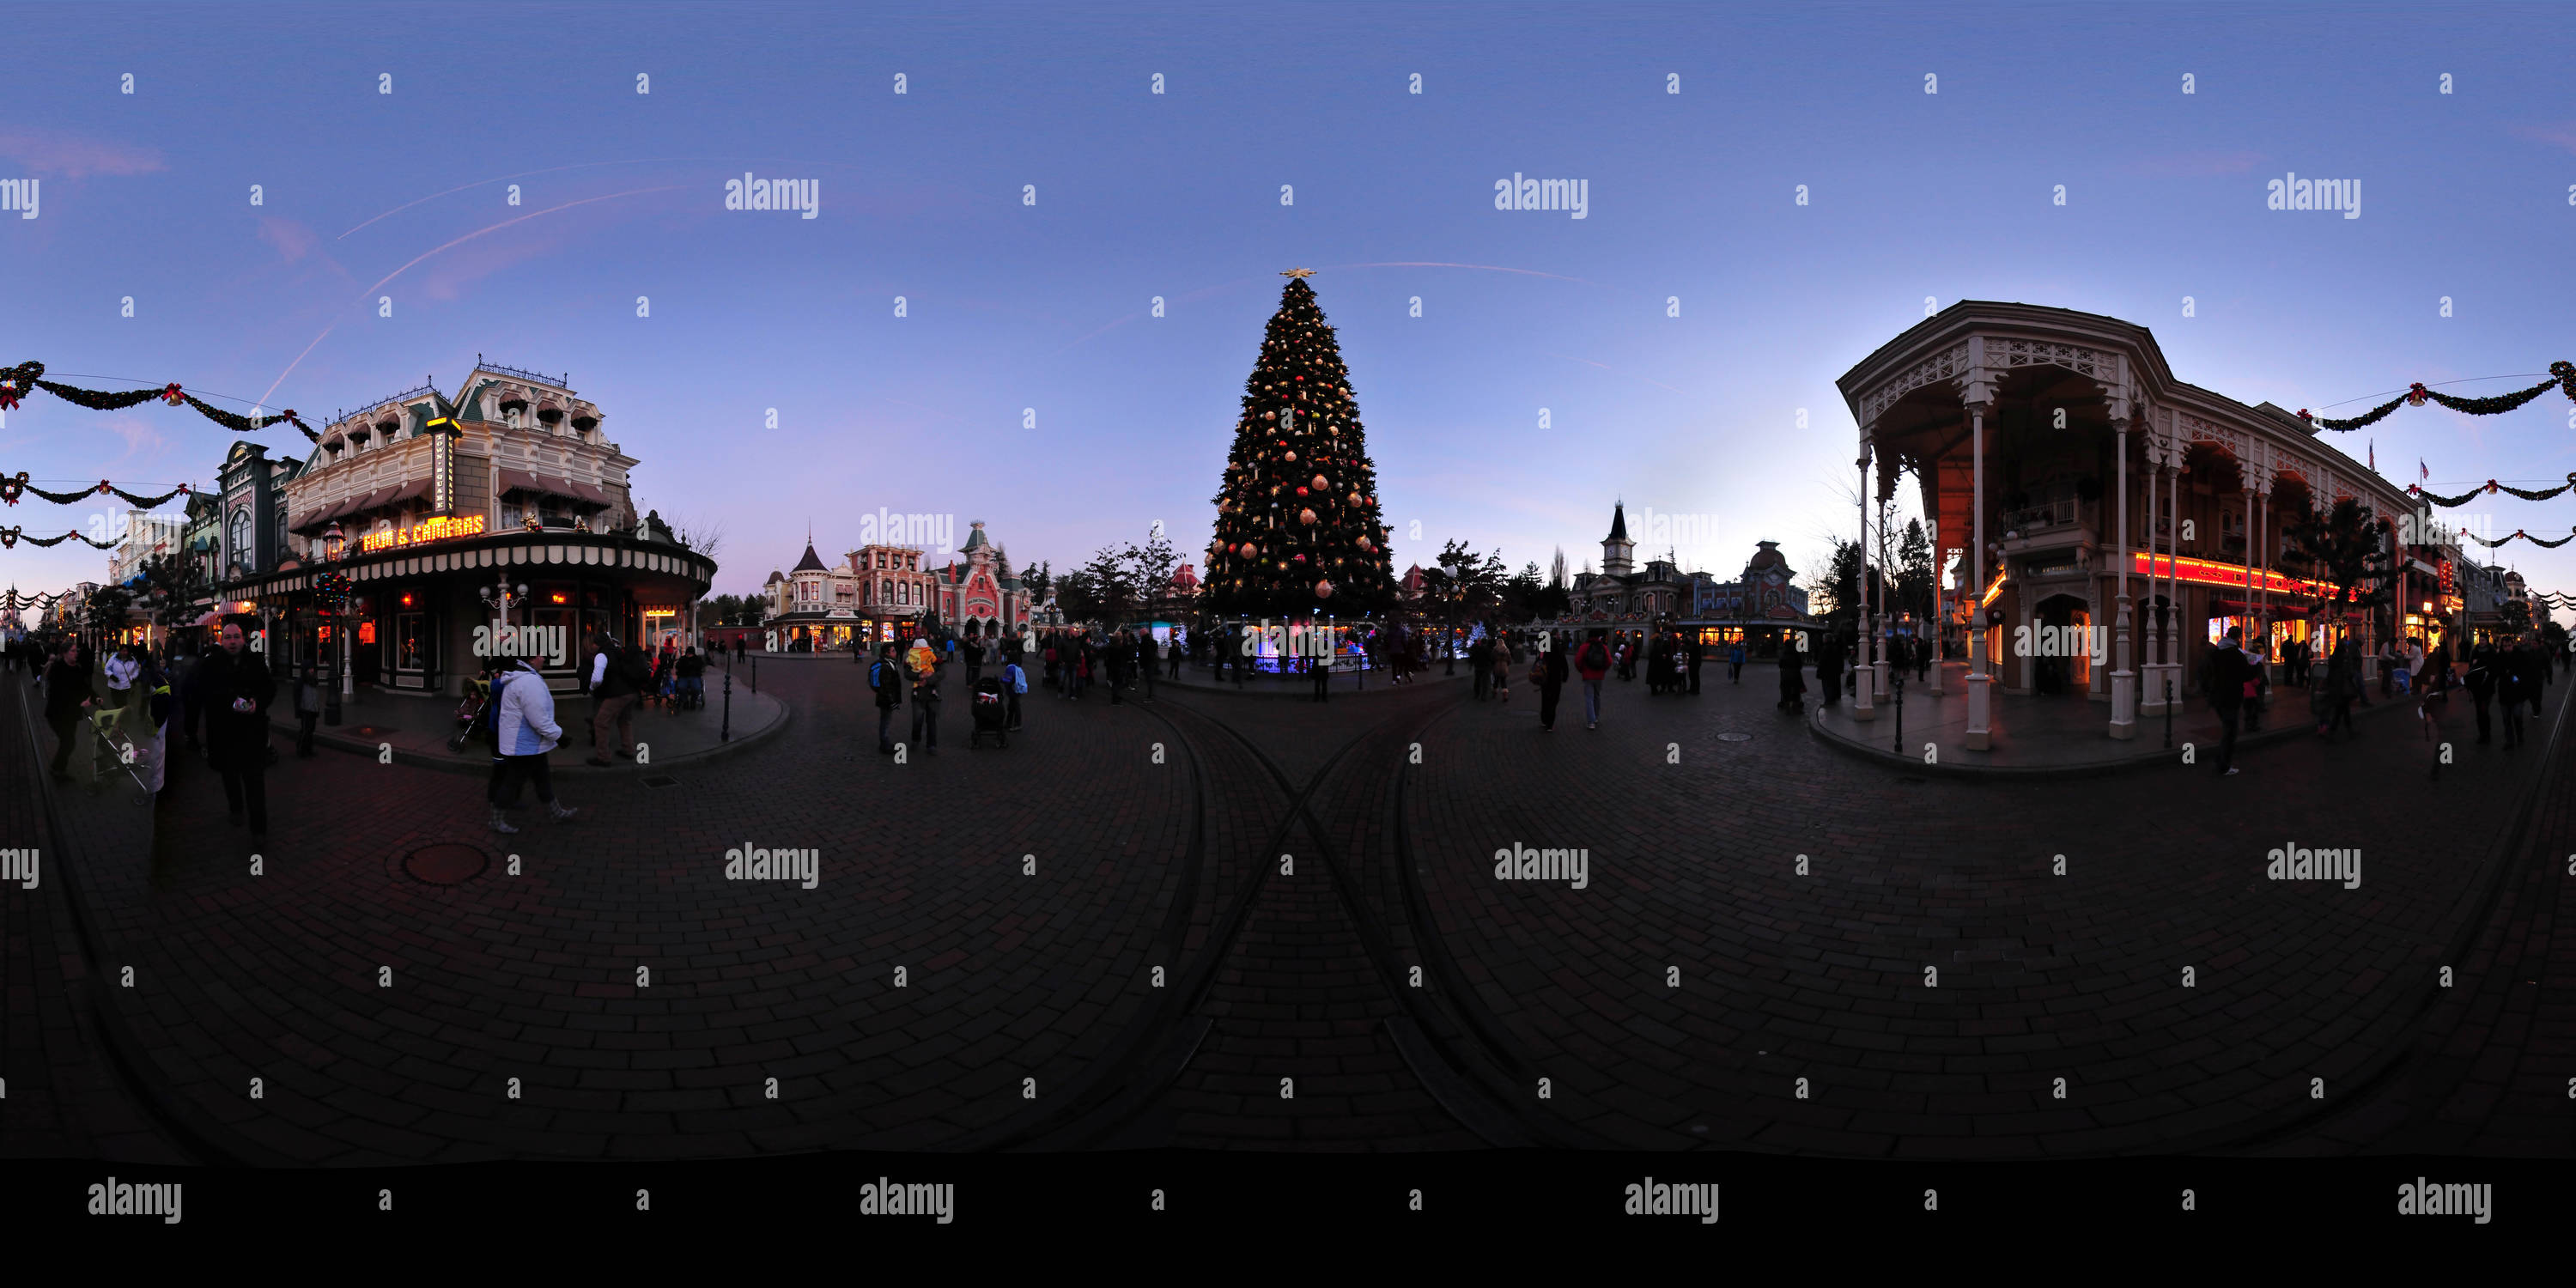 360 degree panoramic view of Christmas Tree, Disneyland Paris